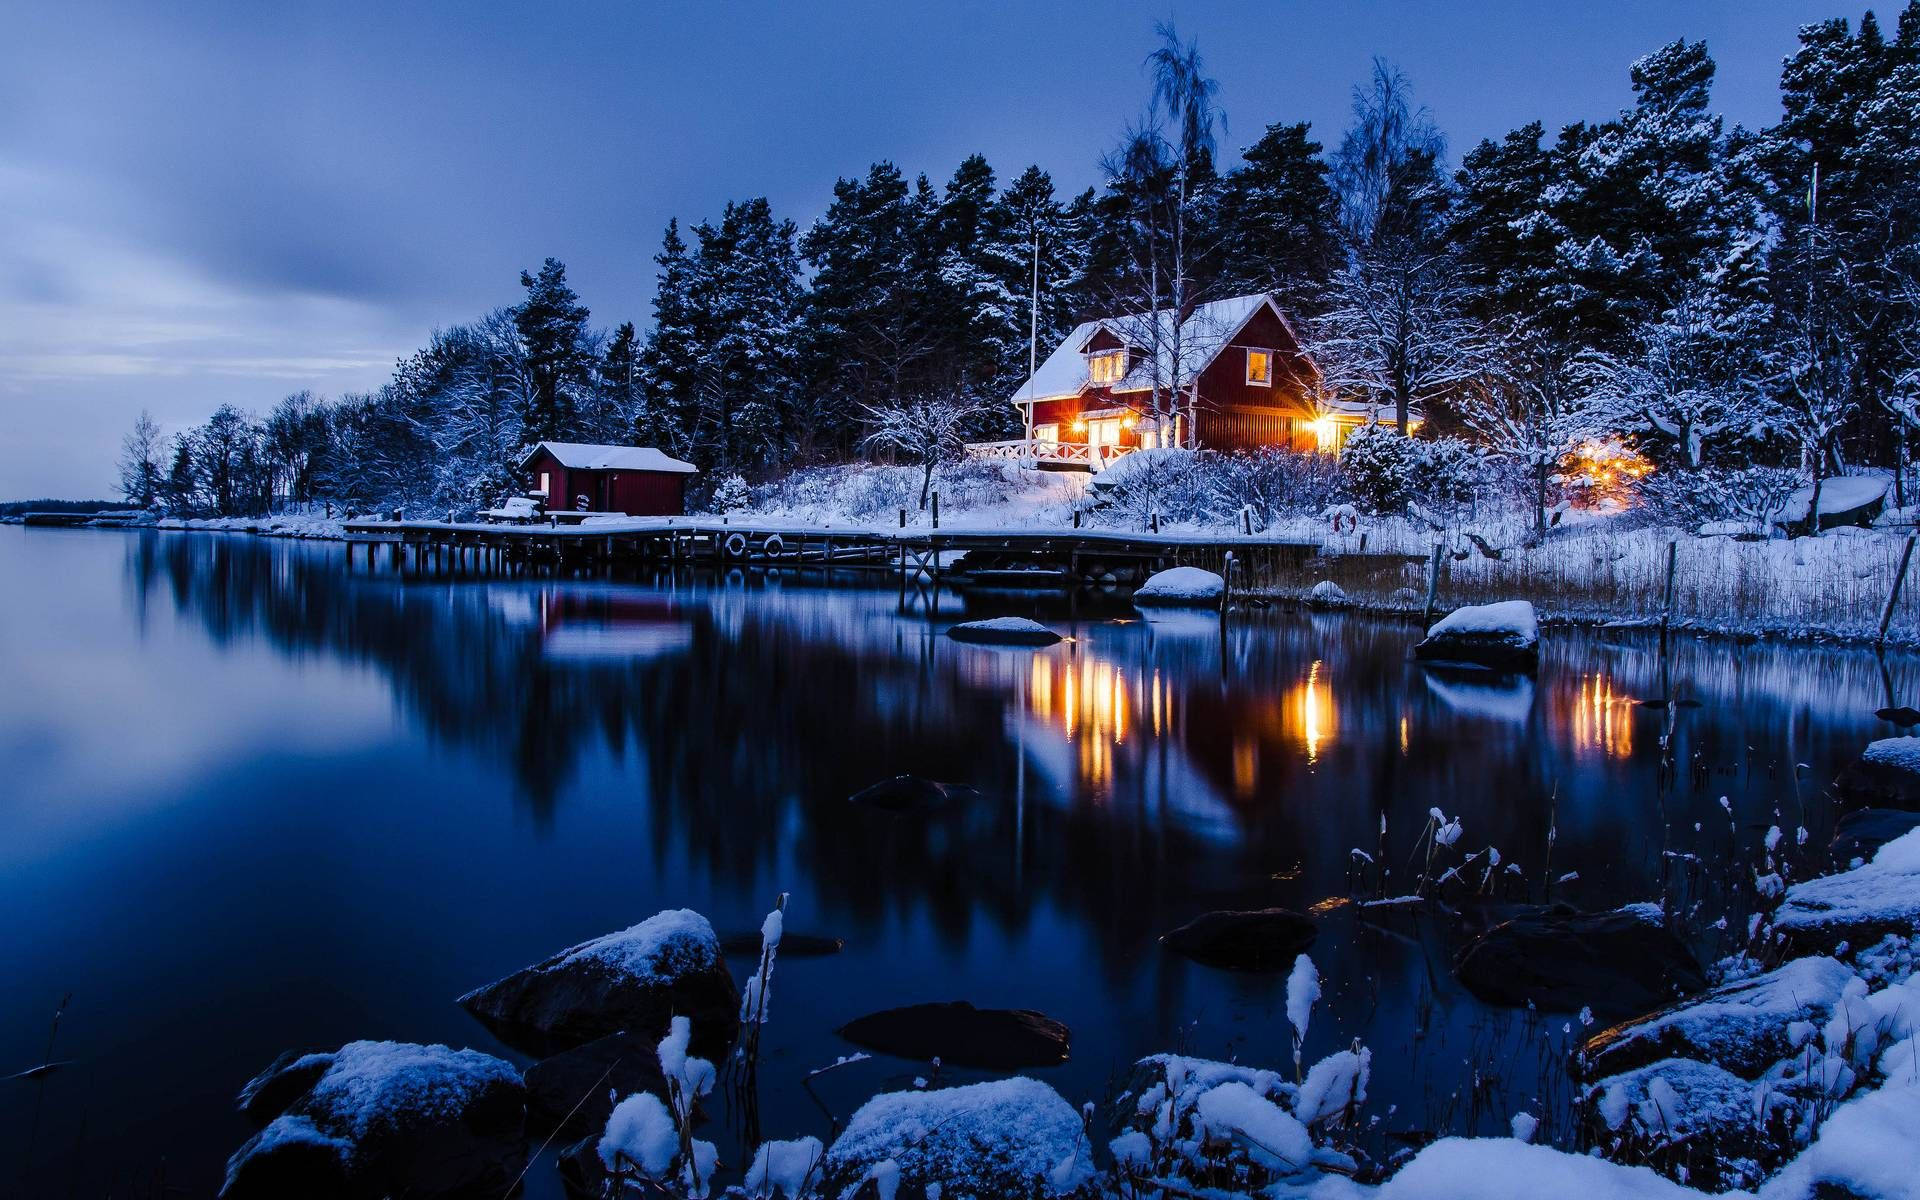 Night Cabin Winter Scenery In Sweden Wallpaper